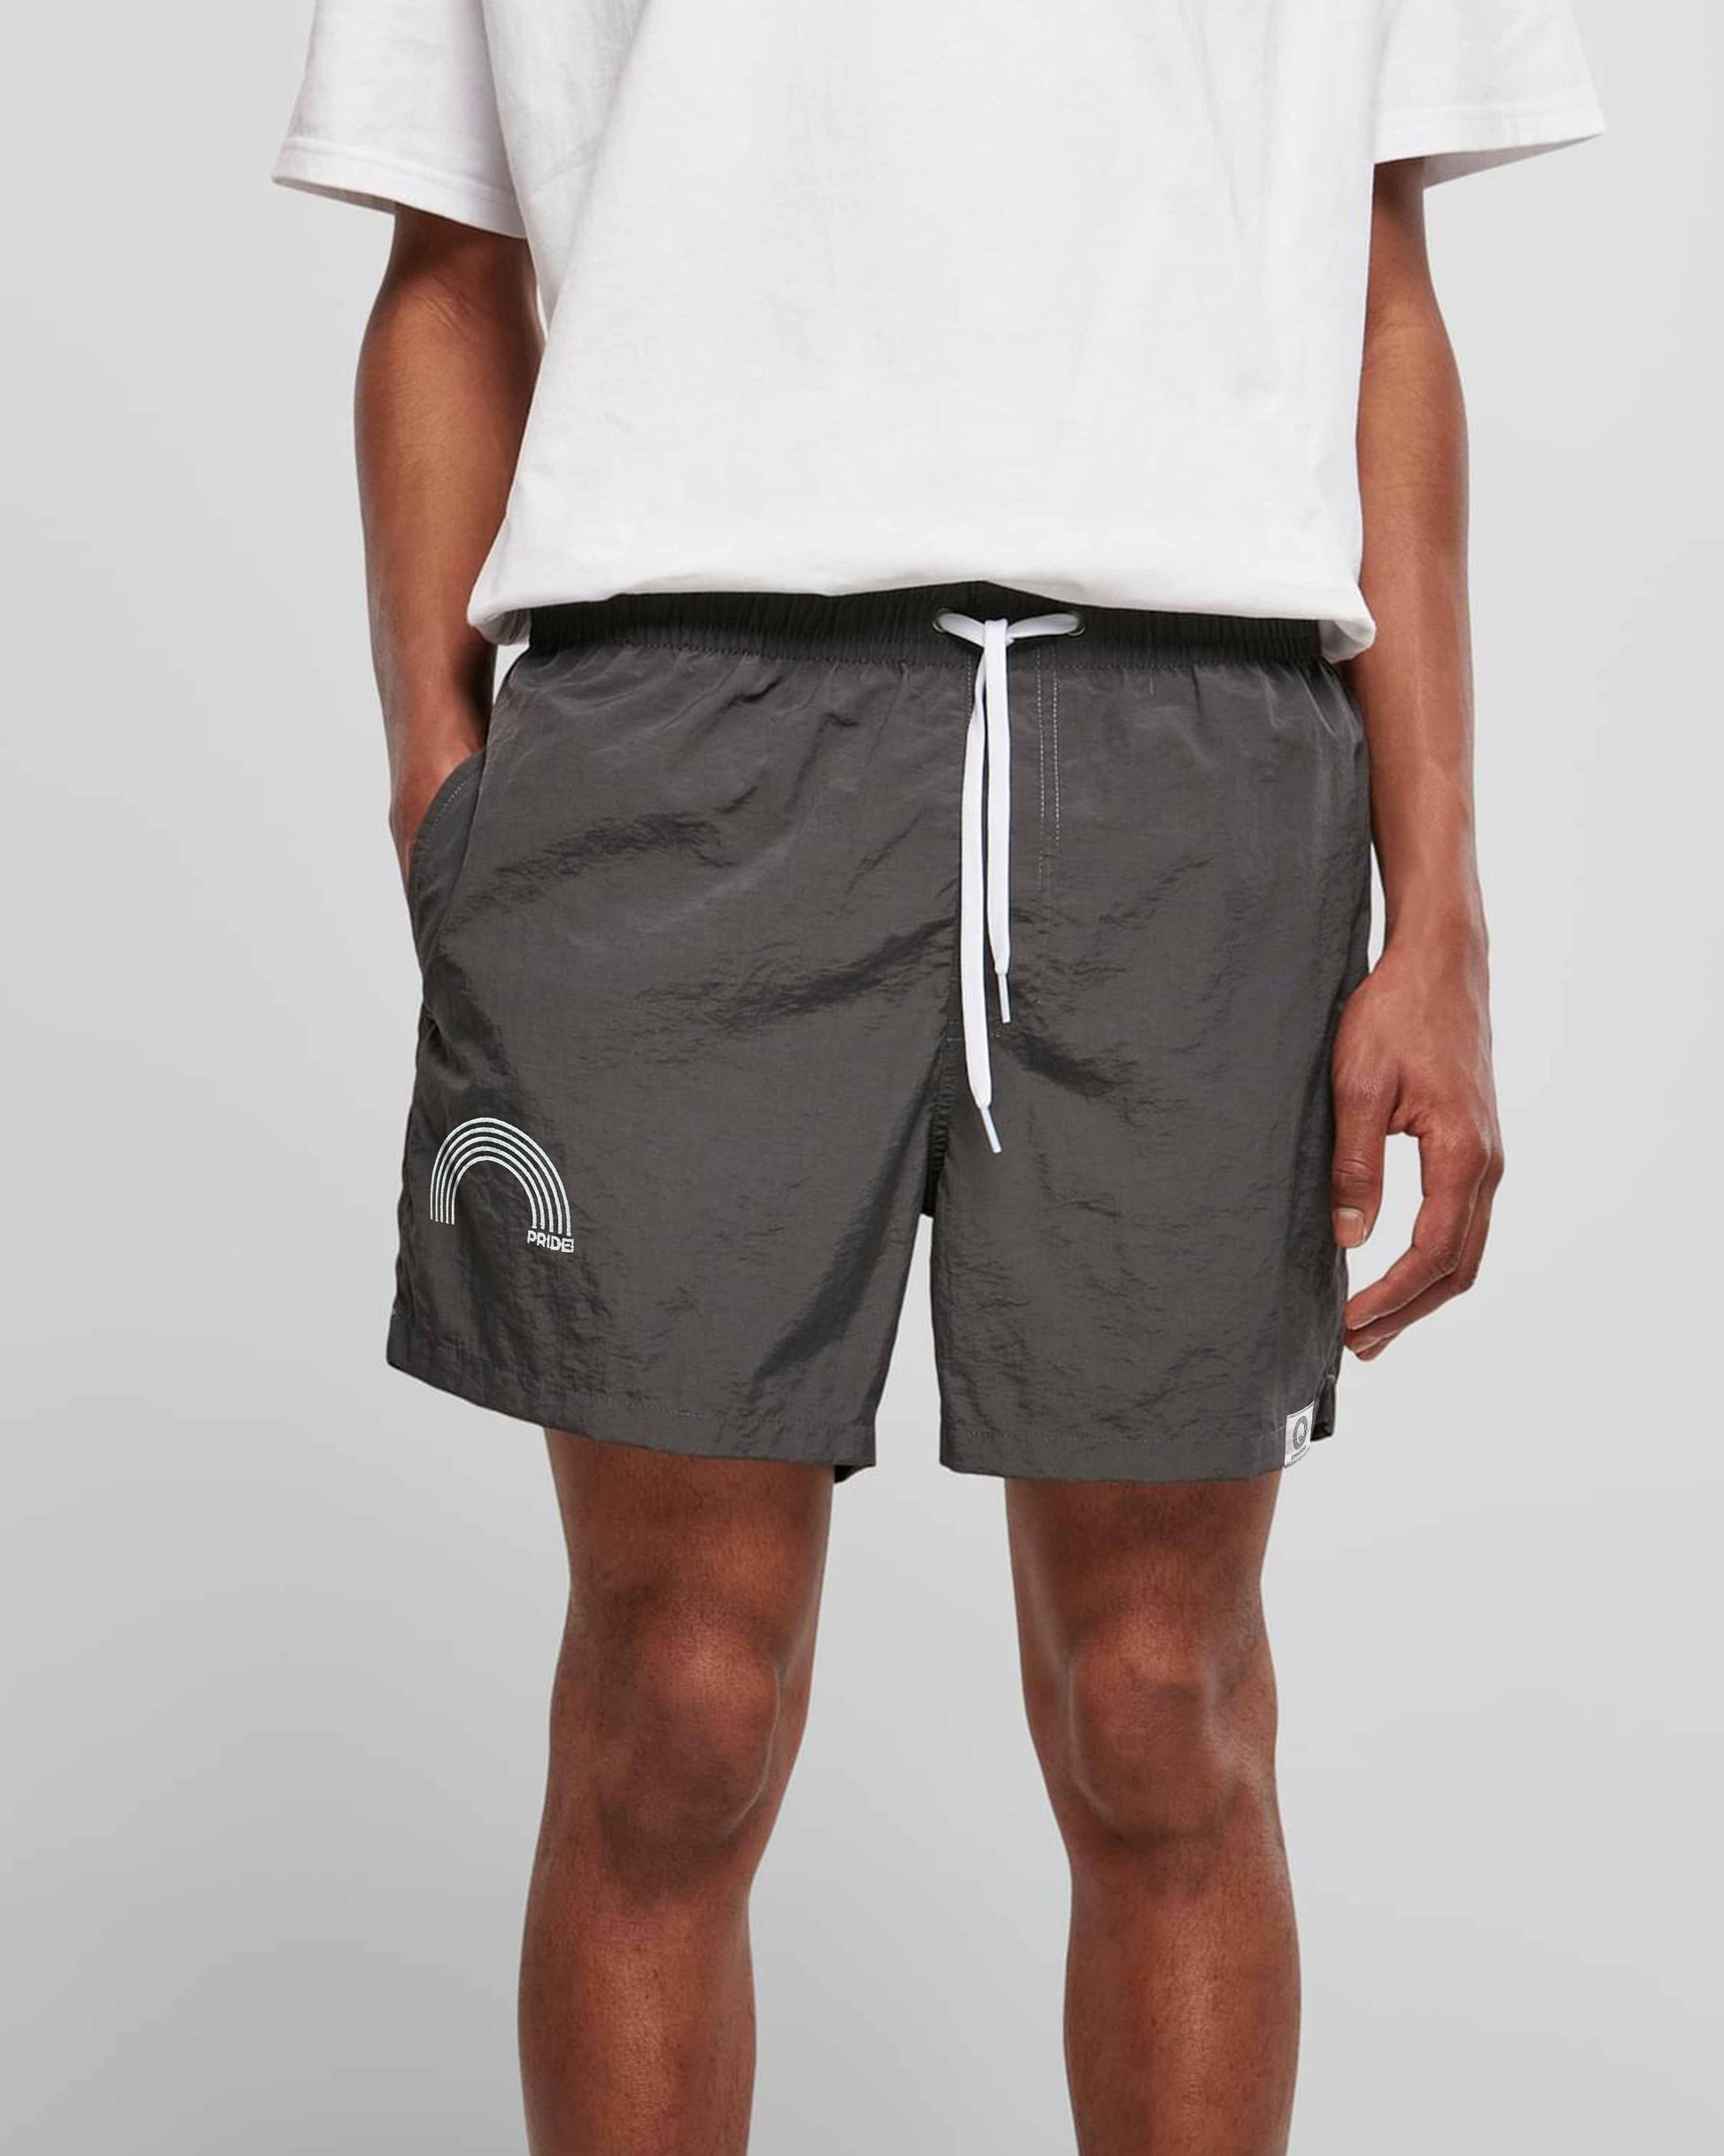 EINHORST® Schwimm- & Sportshorts mit dem Motiv "pride-Regenbogen" in der Farbe "Darkshadow", Bild von einer männlichen Person von vorne, die die Shorts trägt